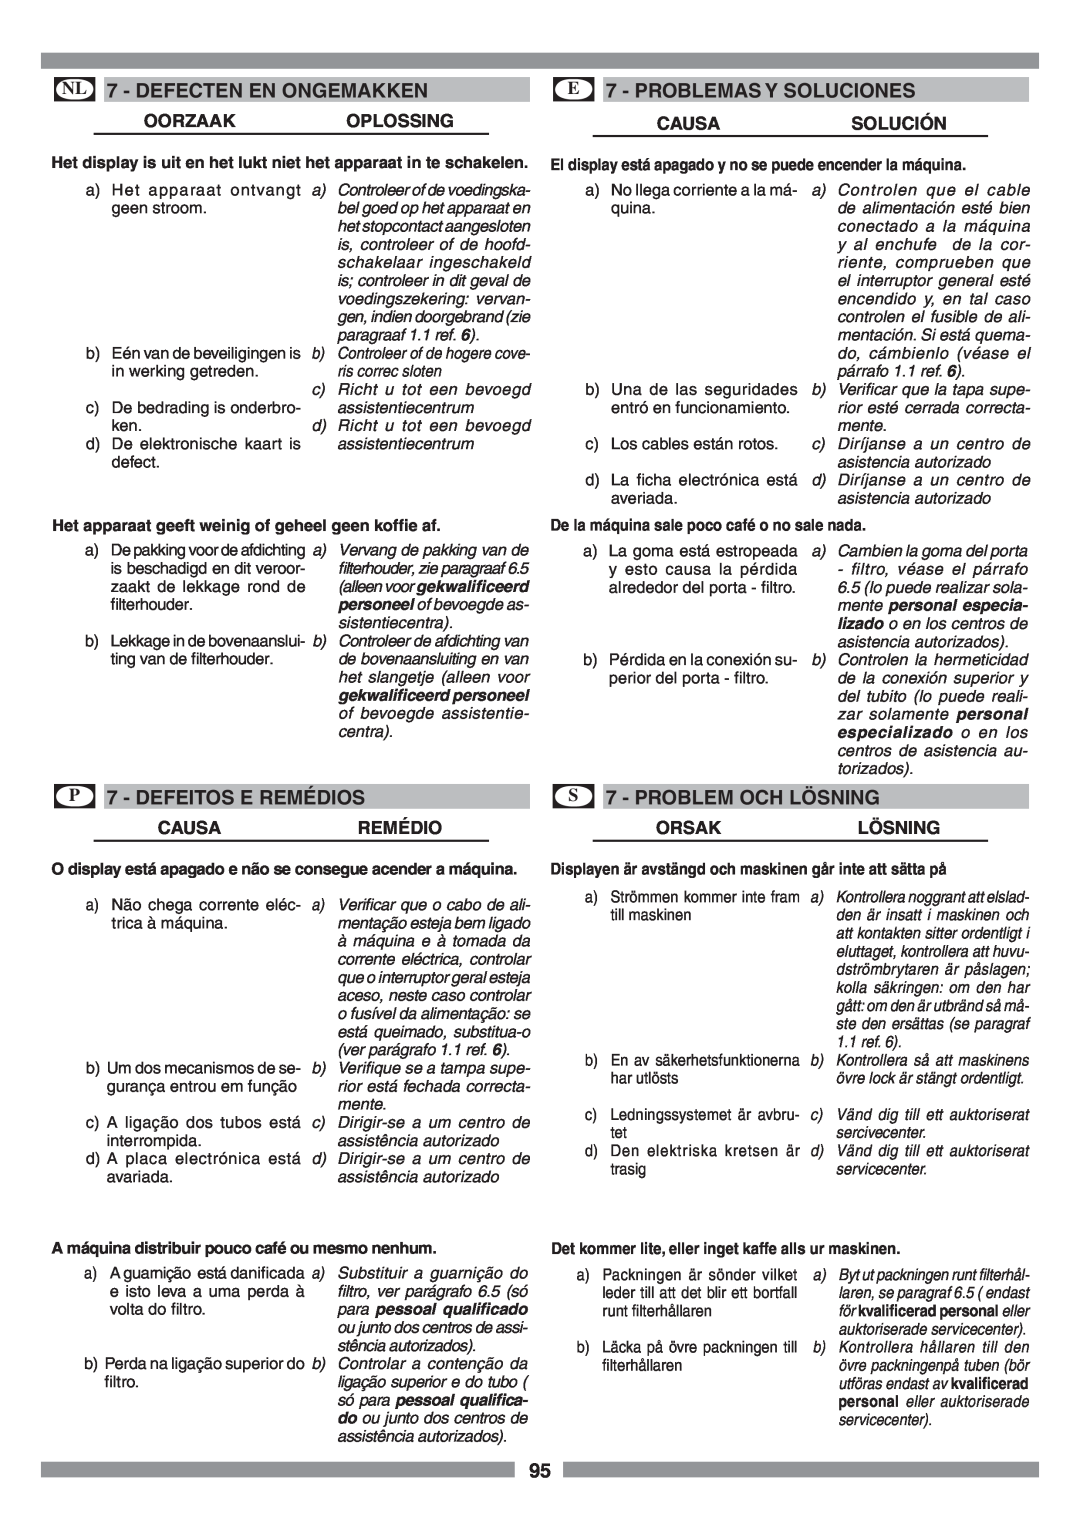 Smeg SCM1 manual Oorzaakoplossing, Causaremédio, Orsaklösning, NL 7 - DEFECTEN EN ONGEMAKKEN, E 7 - PROBLEMAS Y SOLUCIONES 